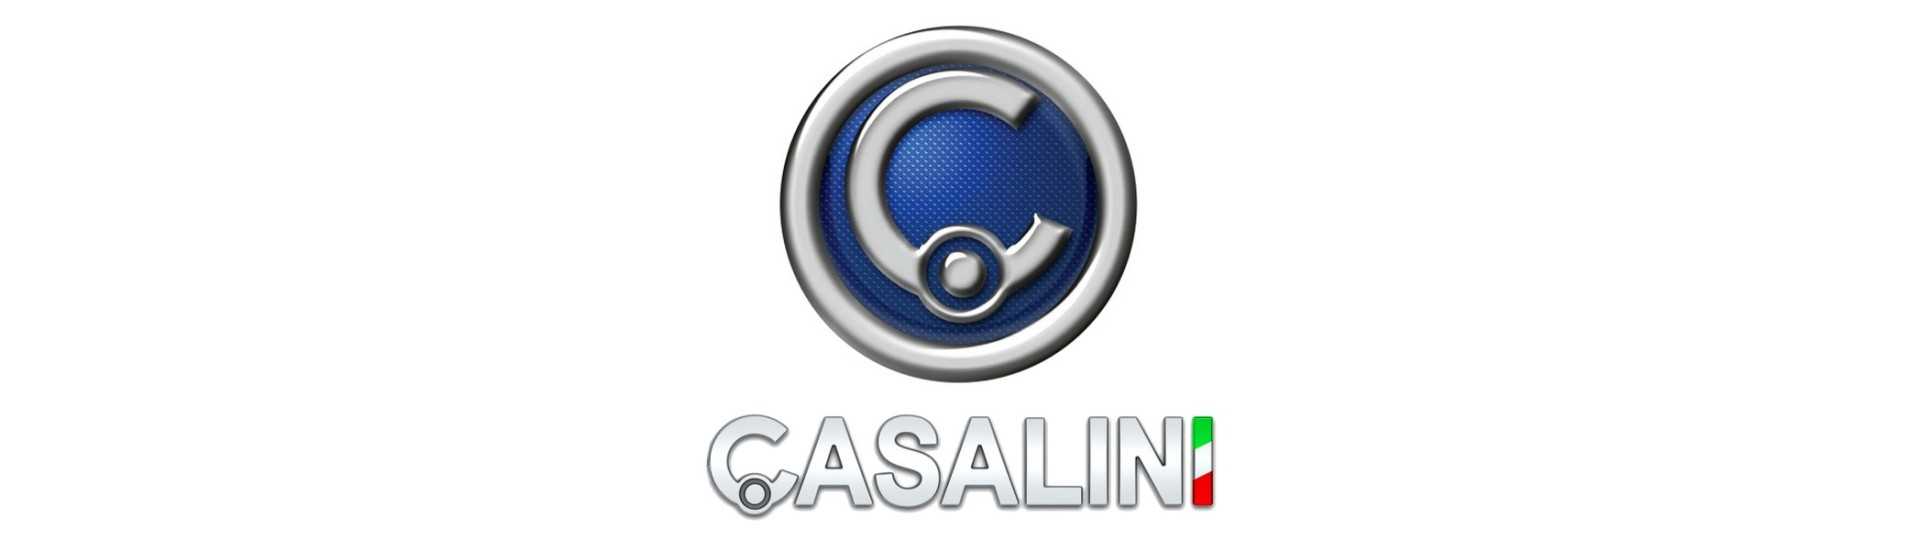 Radar und Rückkamera zum besten Preis Auto ohne Lizenz Casalini